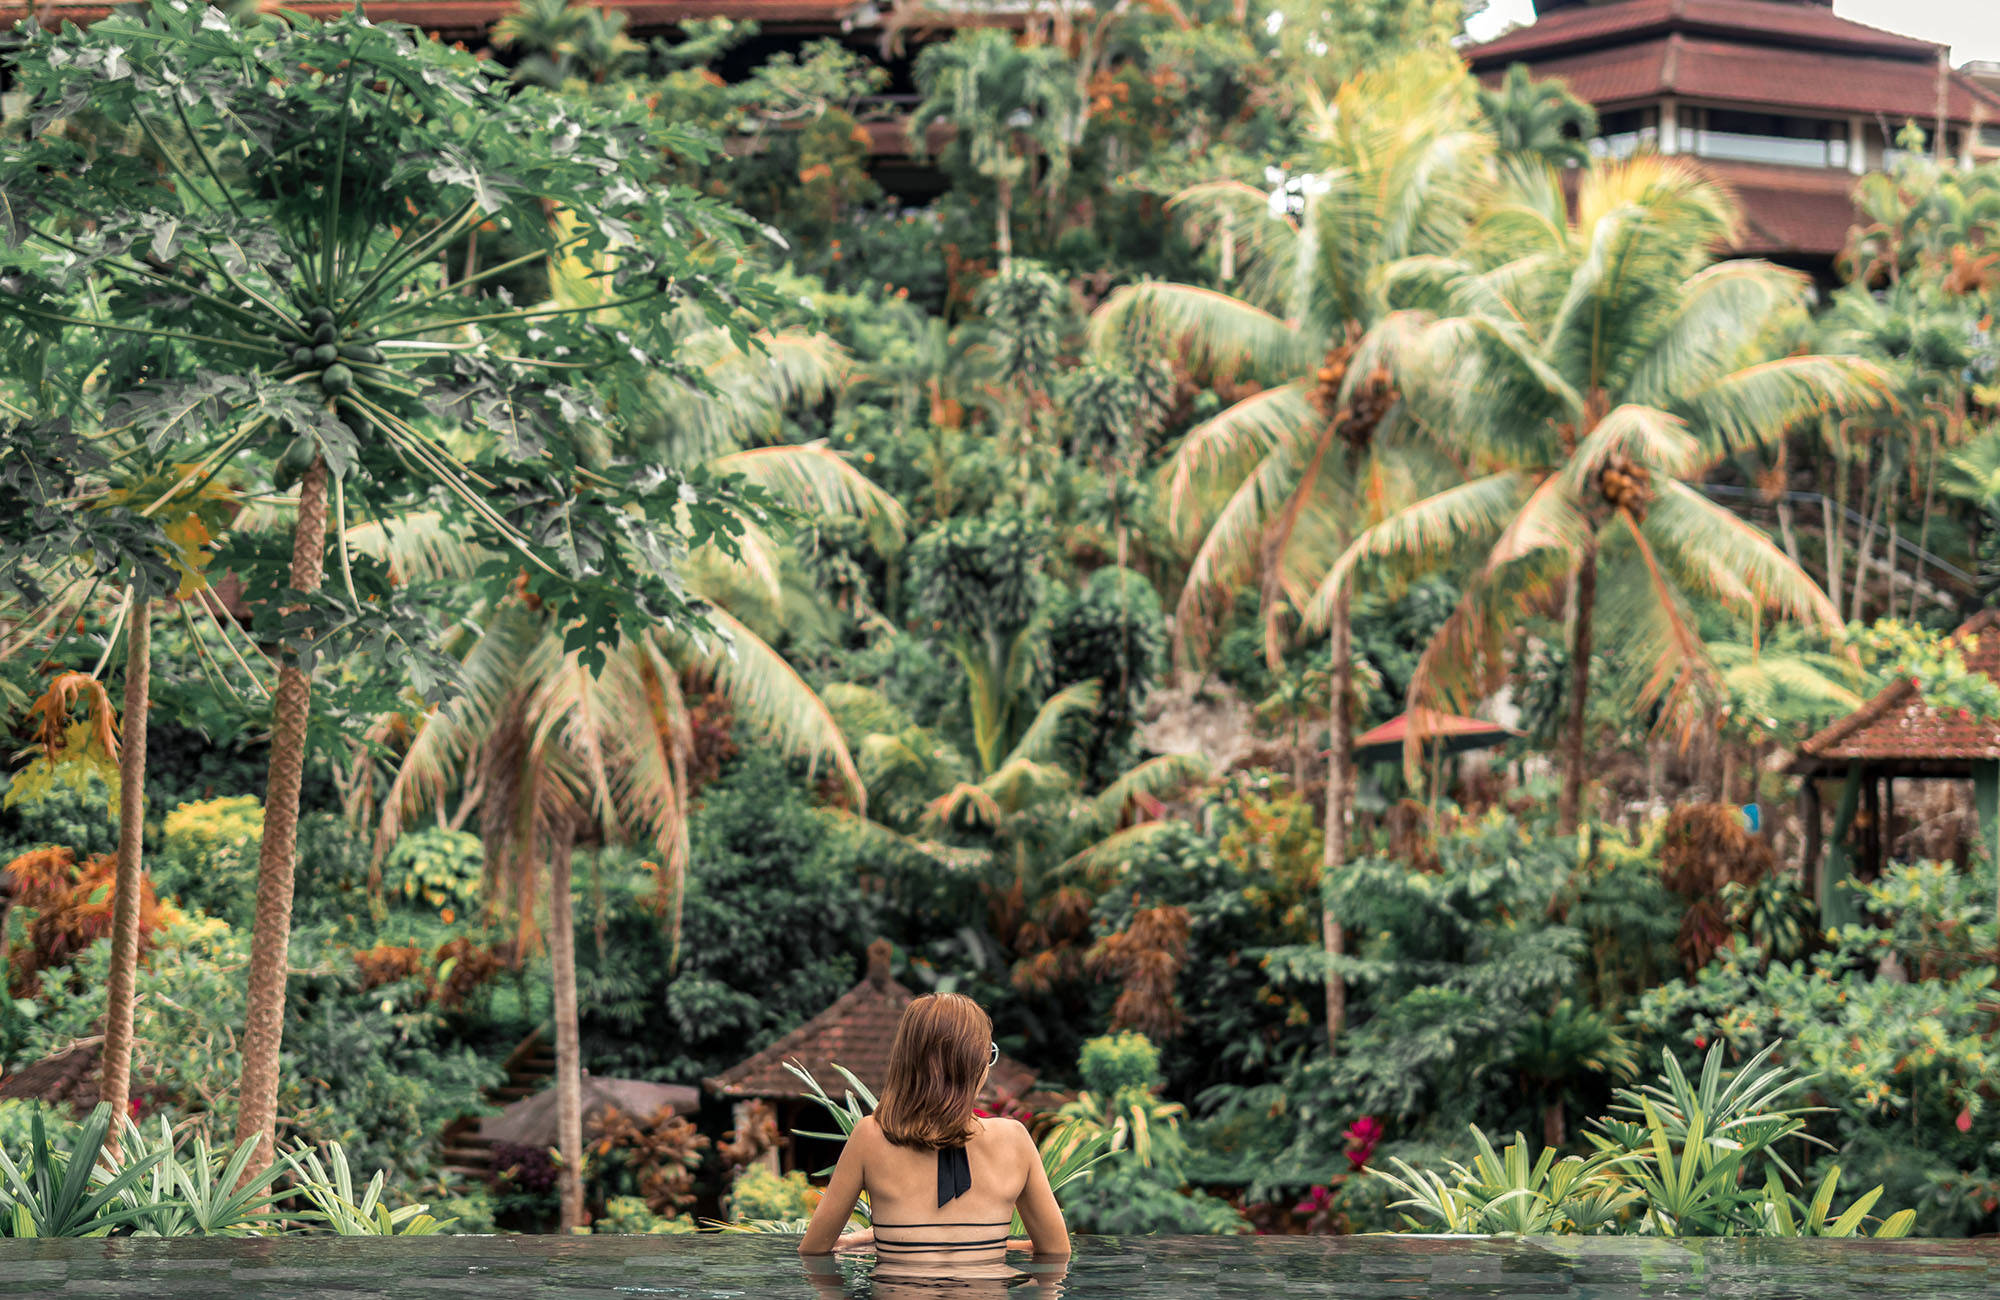 Bali resor bjuder på grymma oaser och fantastiska skogar